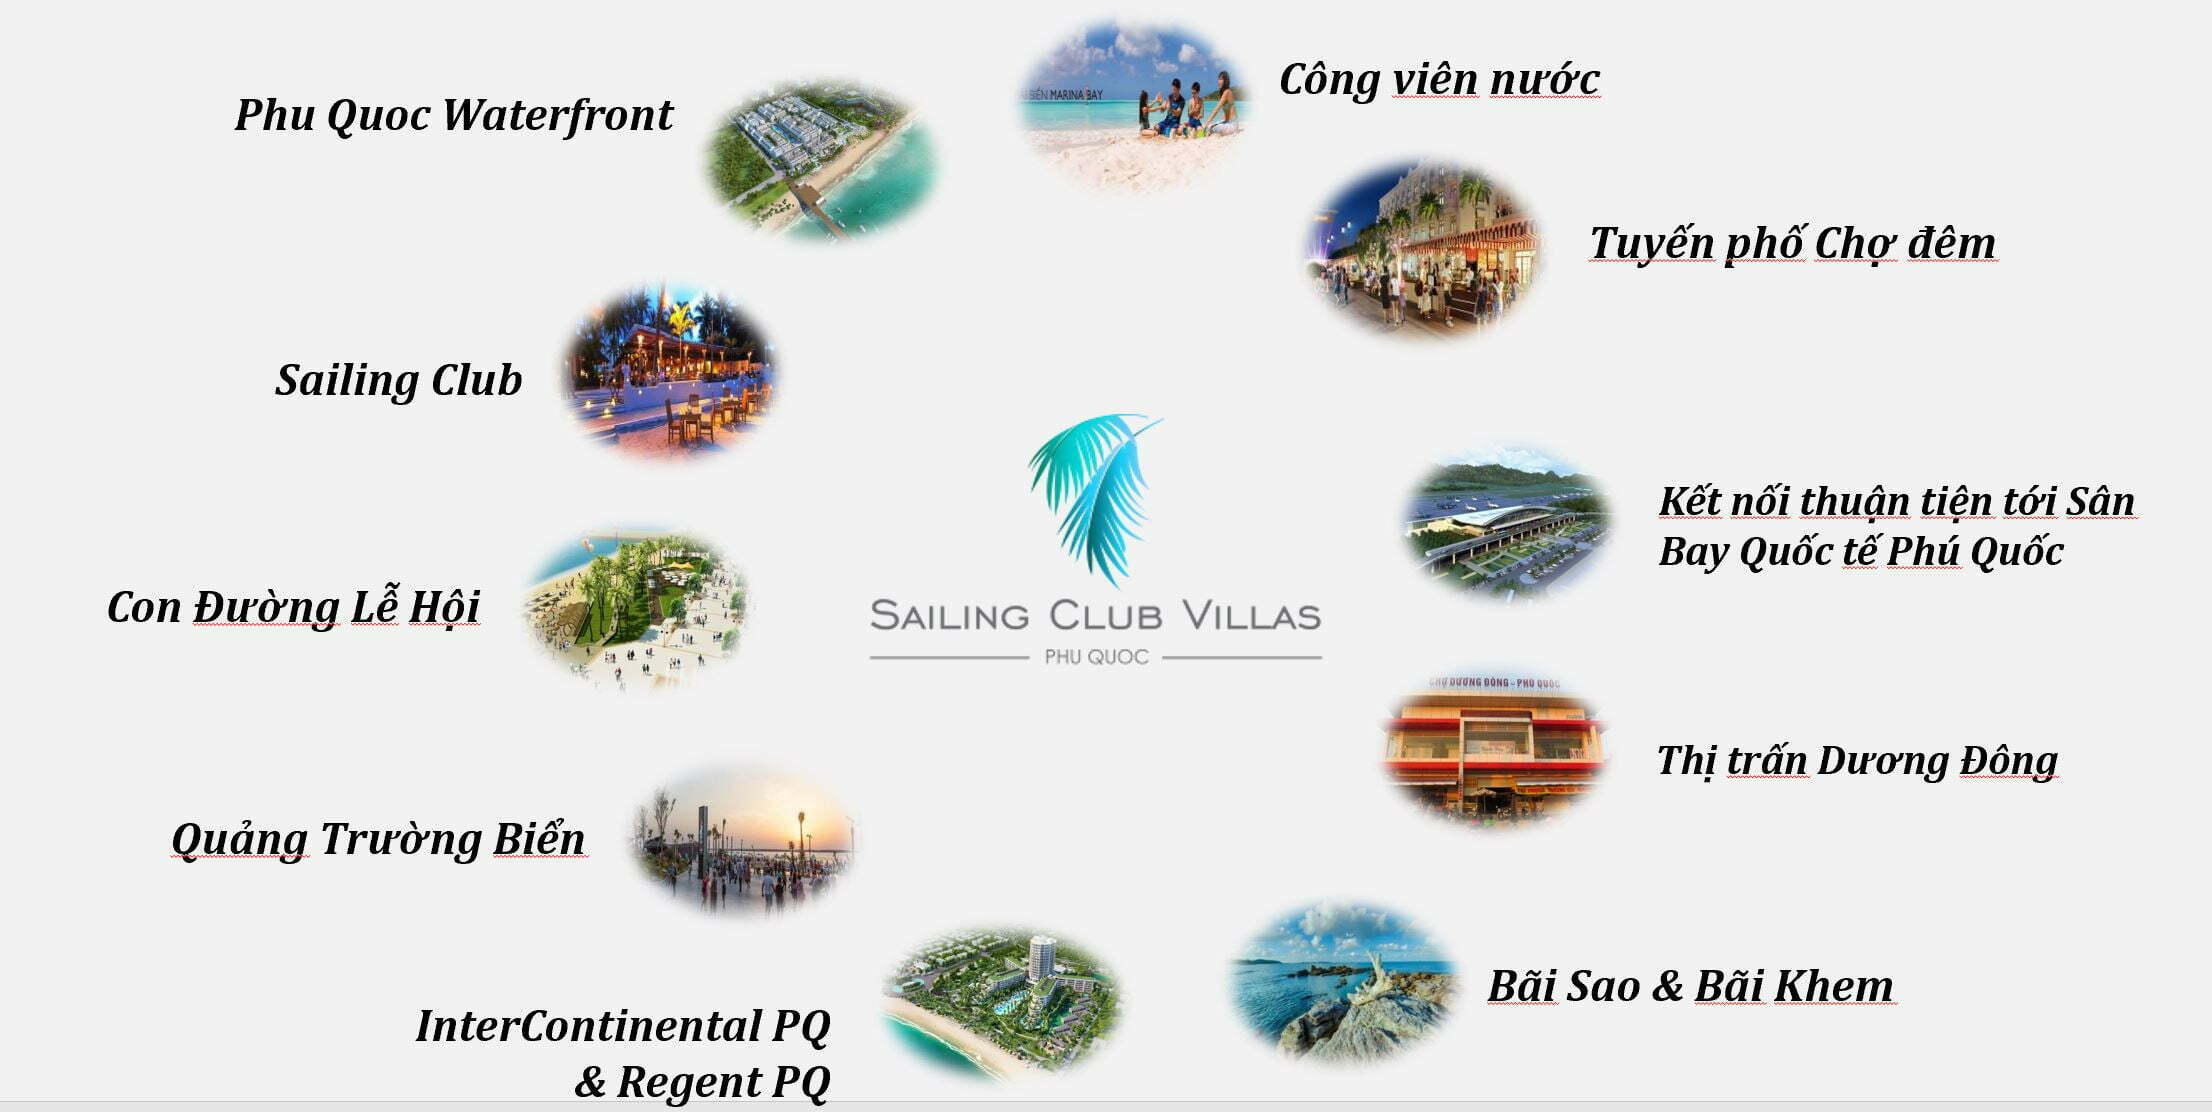 Tại Sailing Club Villas Phu Quoc có thể dễ dàng kết nối với các tiện ích nội khu Phu Quoc Marina